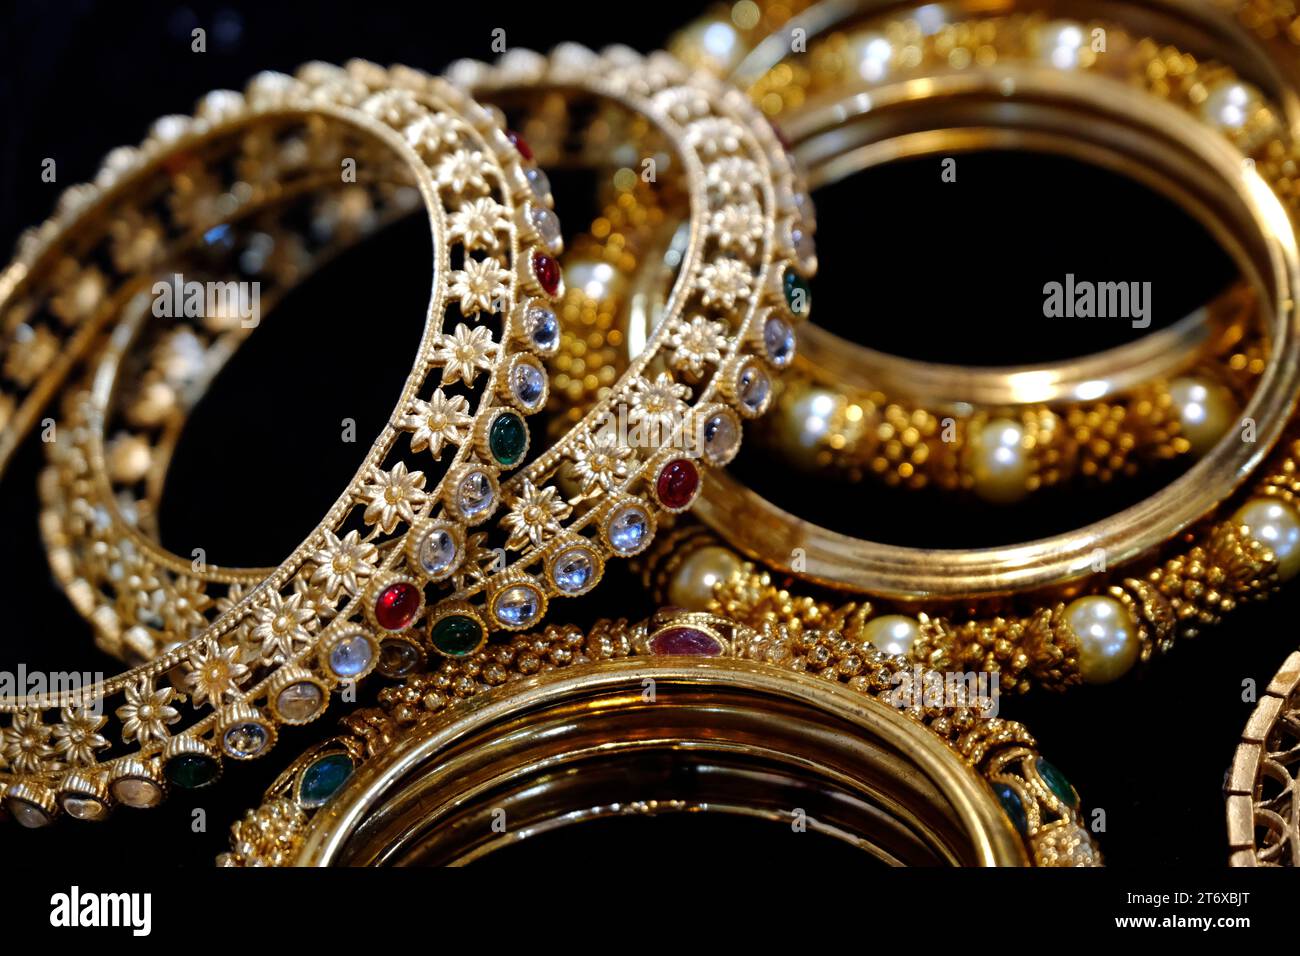 Indische Armreifen werden in einem lokalen Geschäft auf einem Markt in Pune, Indien, ausgestellt. Diese Armreifen sind aus Gold, Silber und Diamant als Schönheitszubehör für Indianer gefertigt Stockfoto